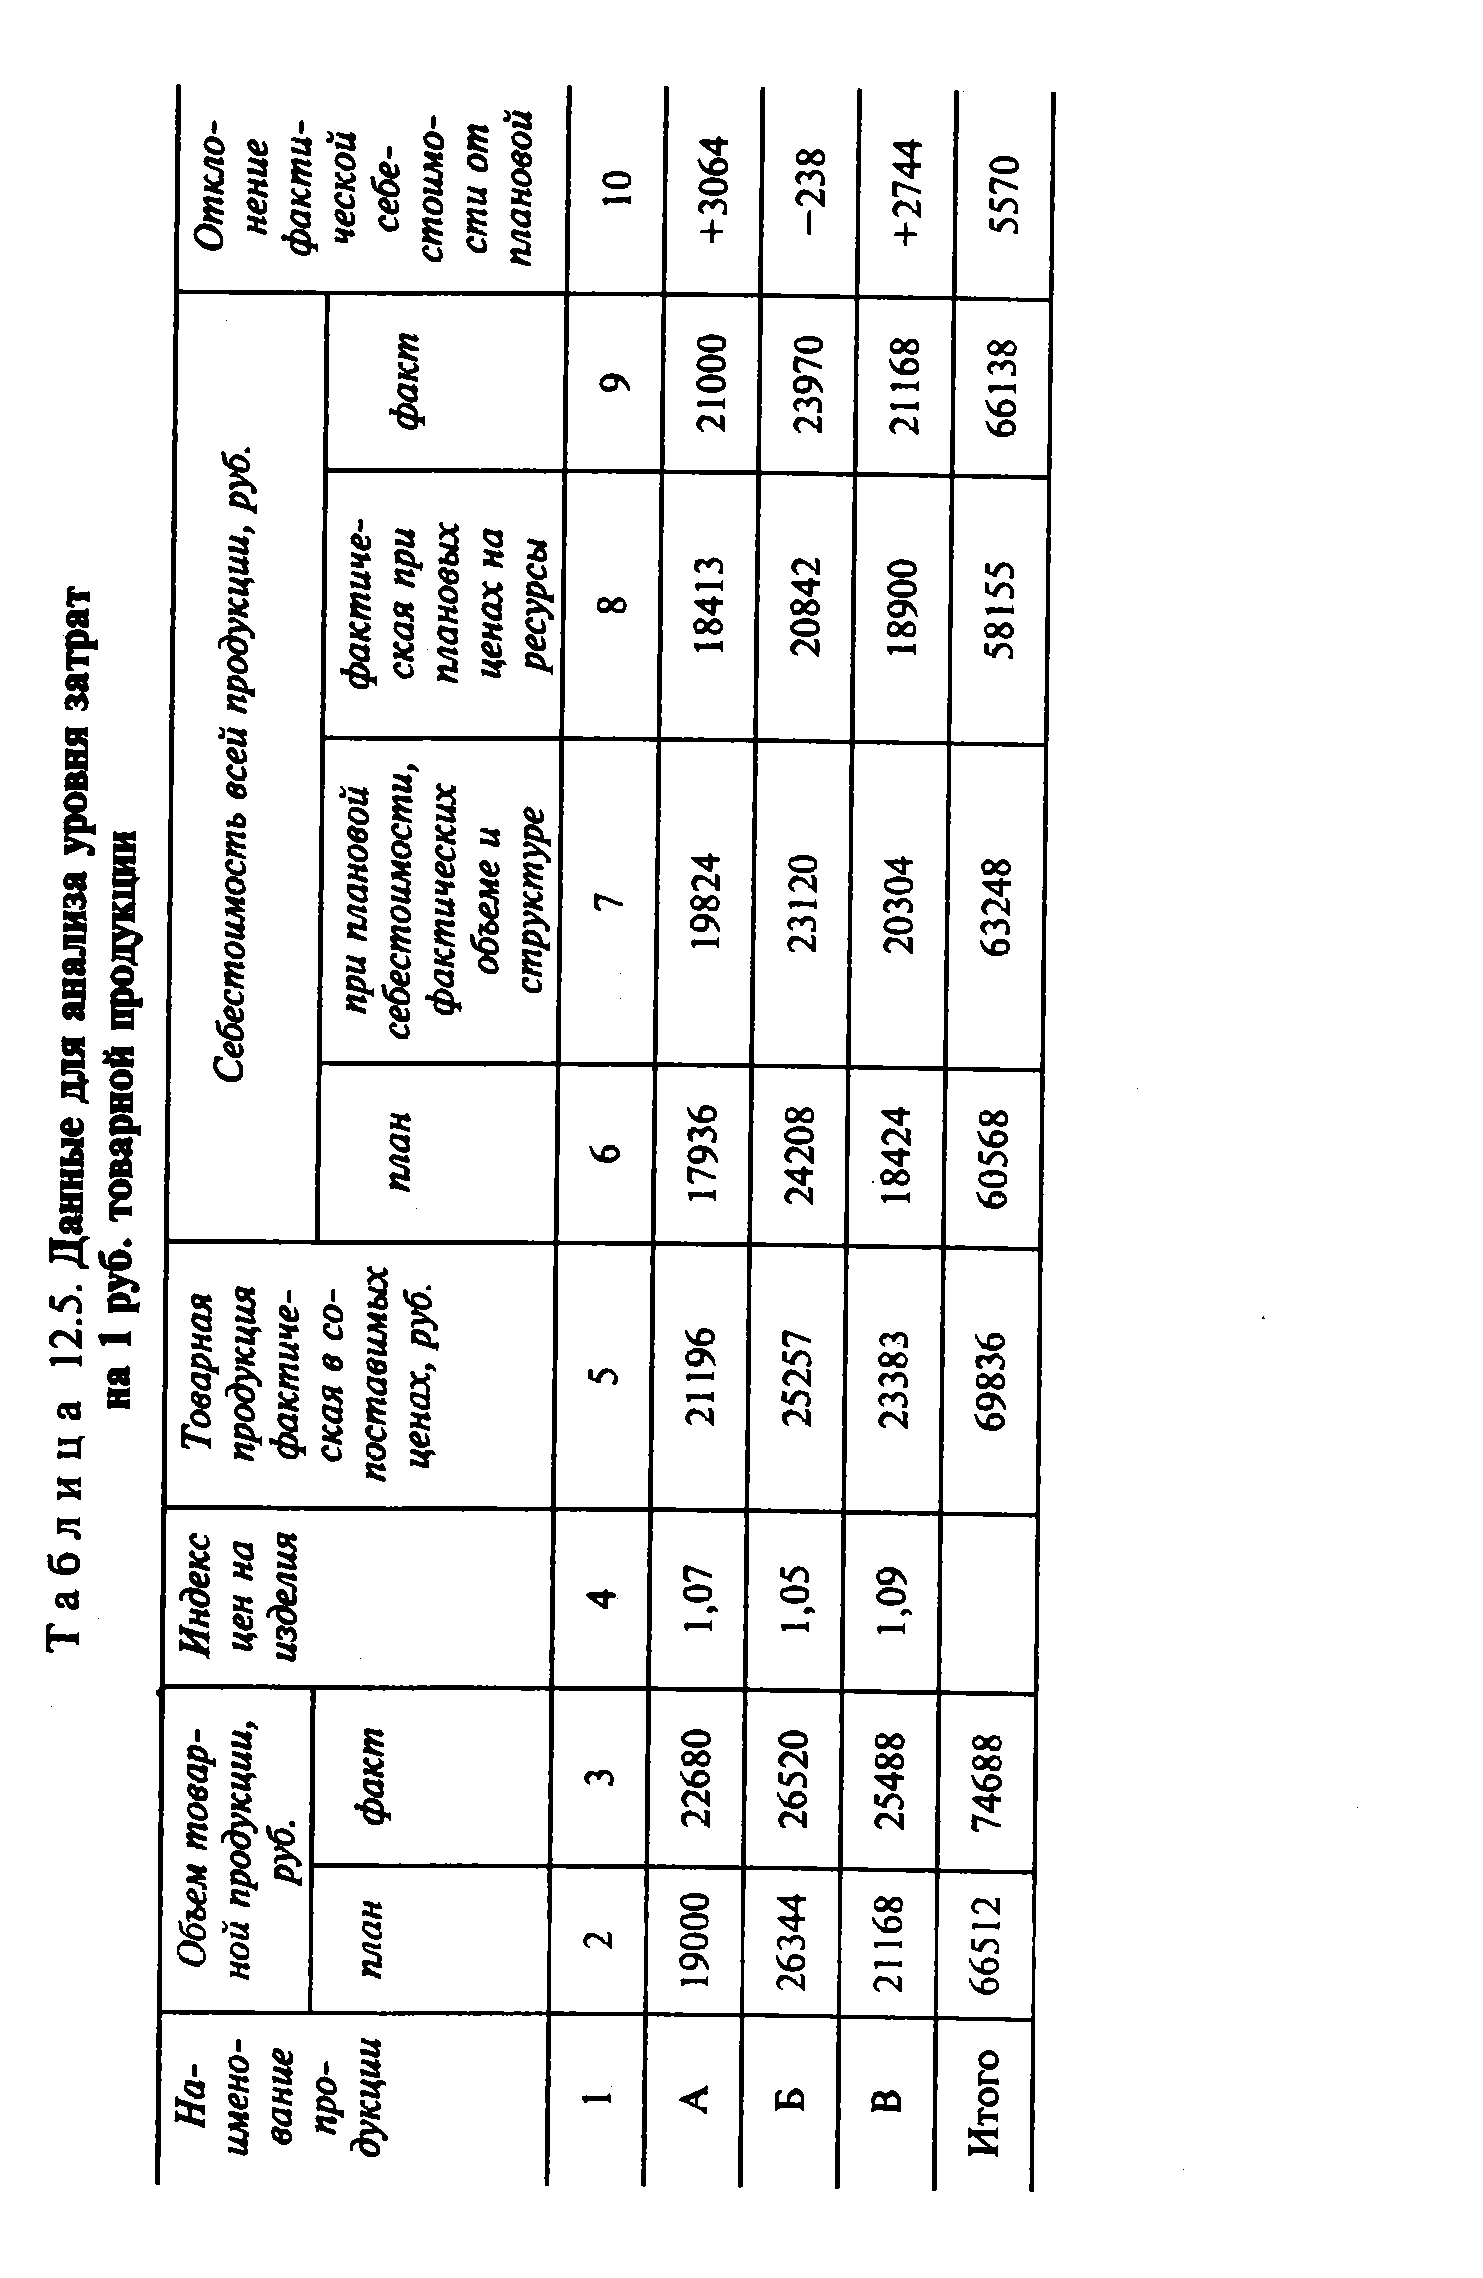 Таблица 12.5. Данные для анализа уровня затрат на 1 руб. товарной продукции
